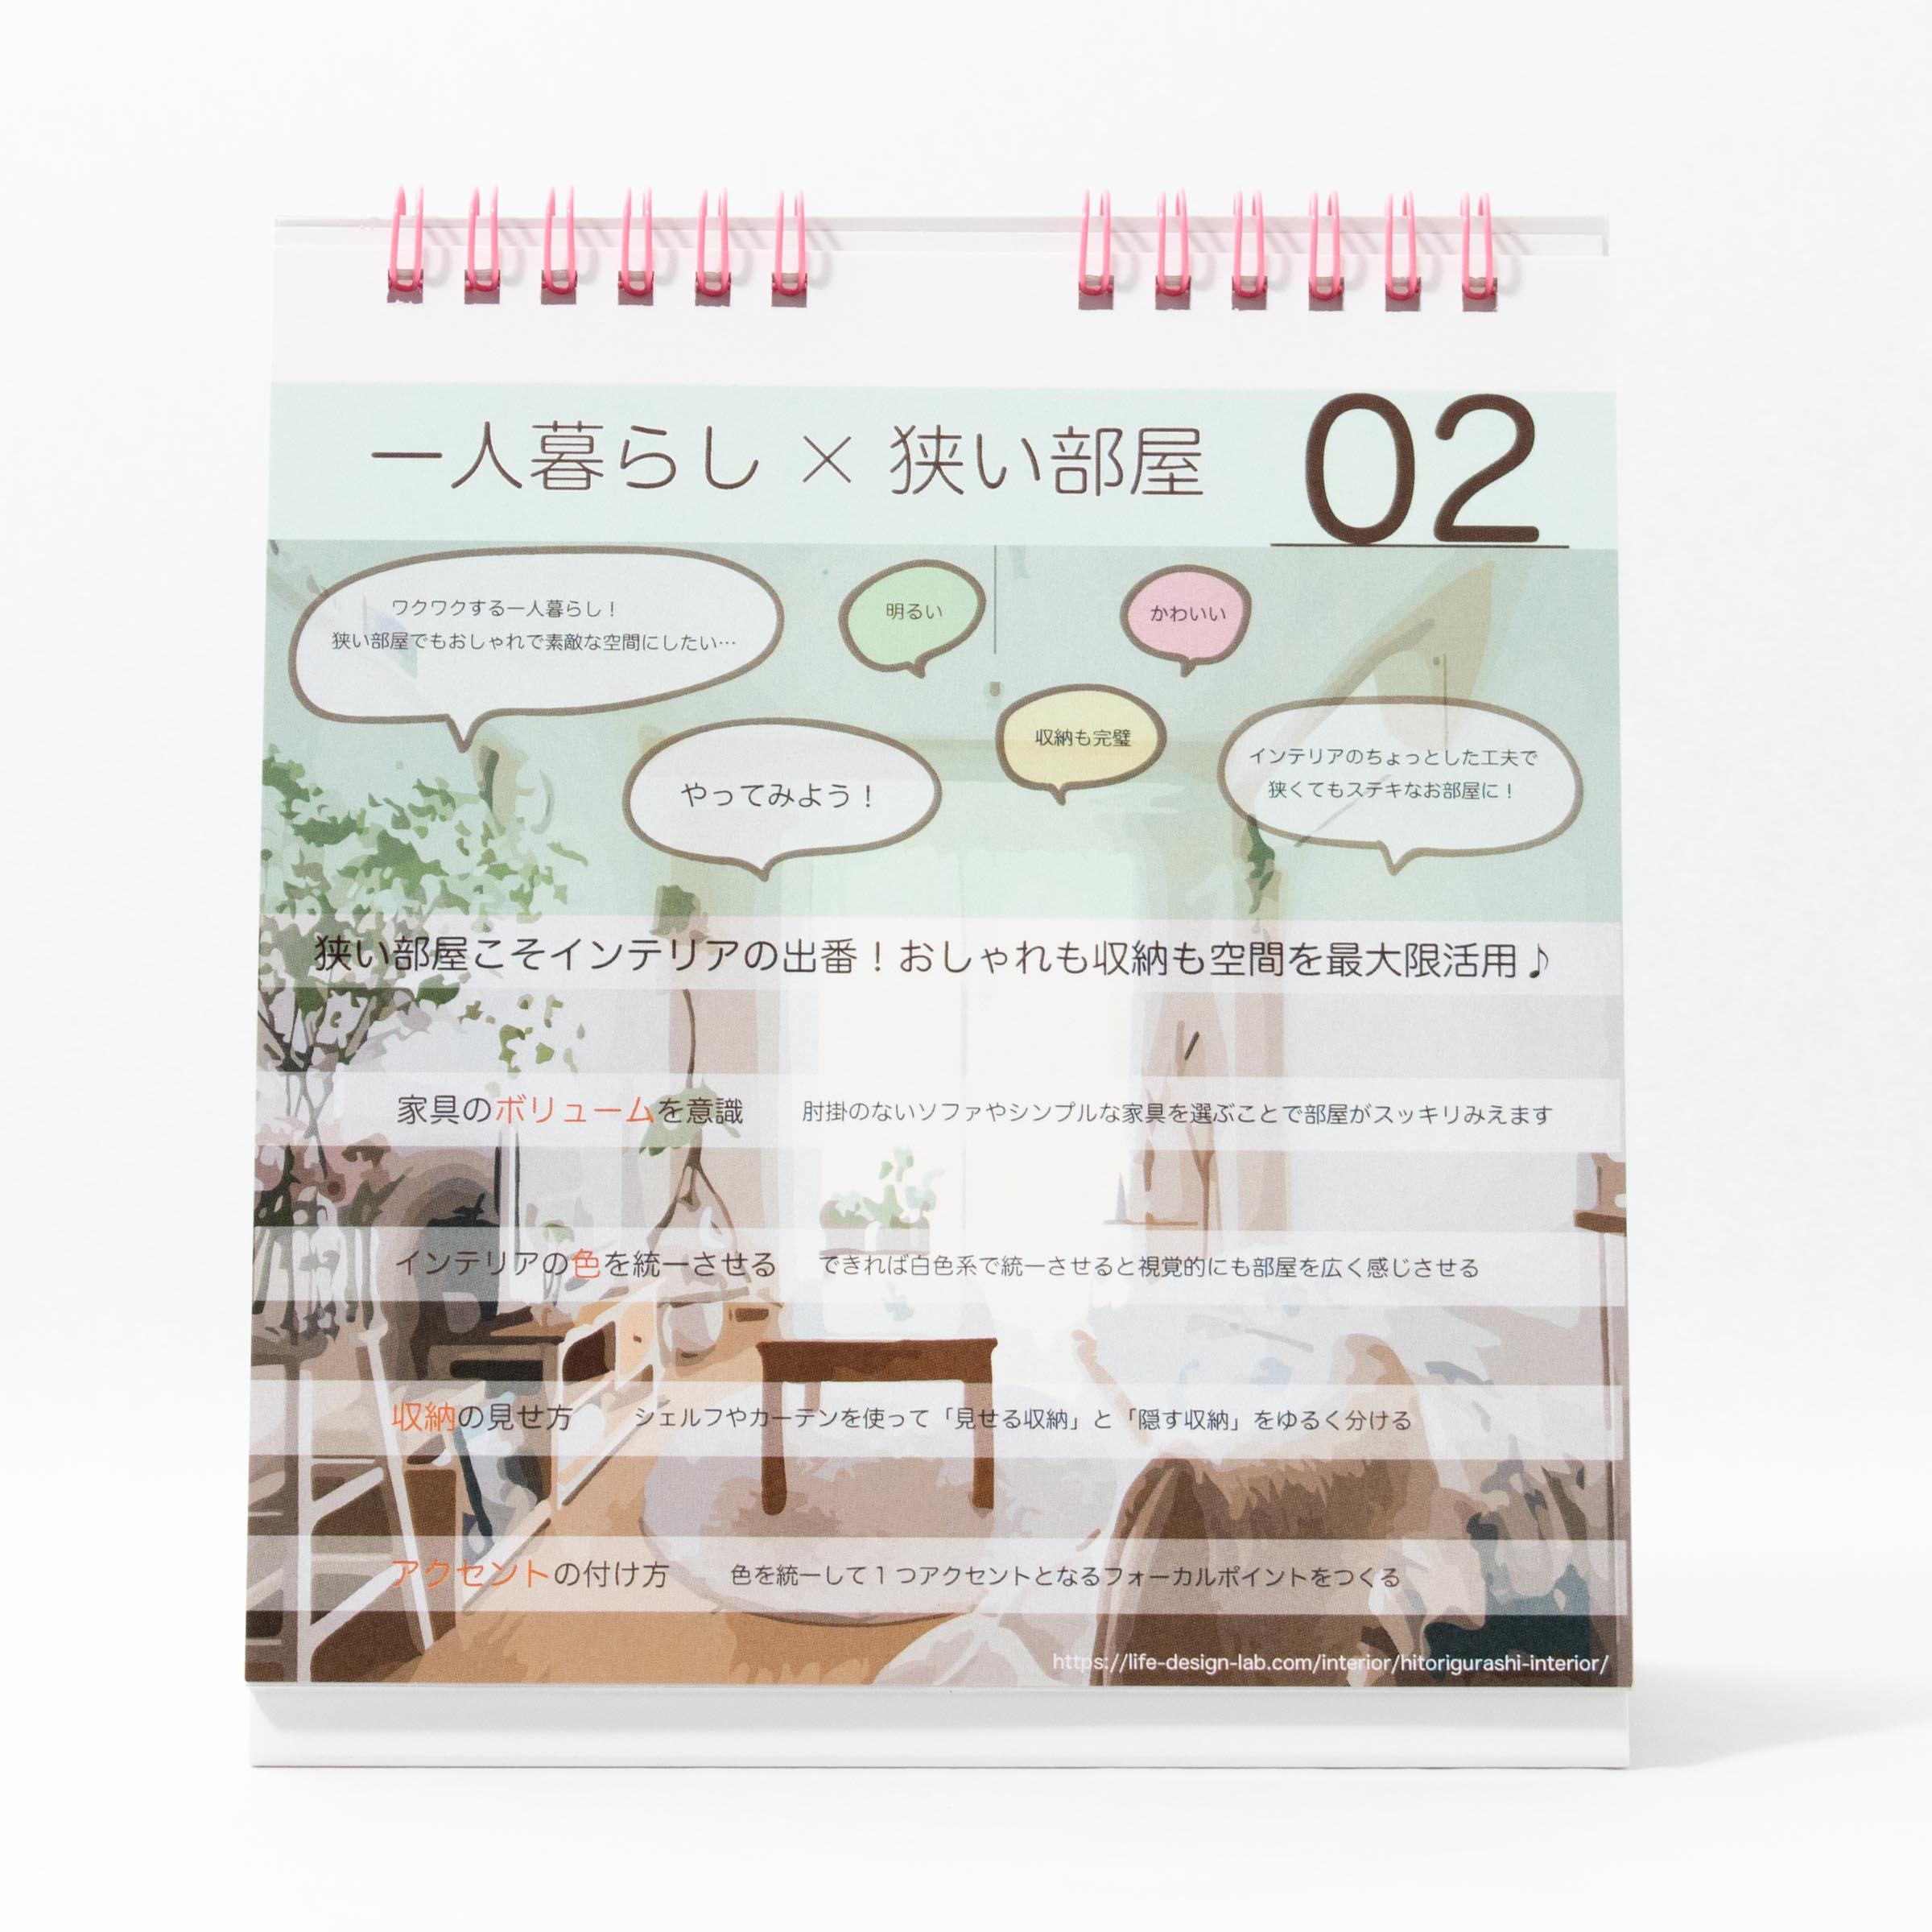 「愛知淑徳大学 様」製作のオリジナルカレンダー ギャラリー写真1